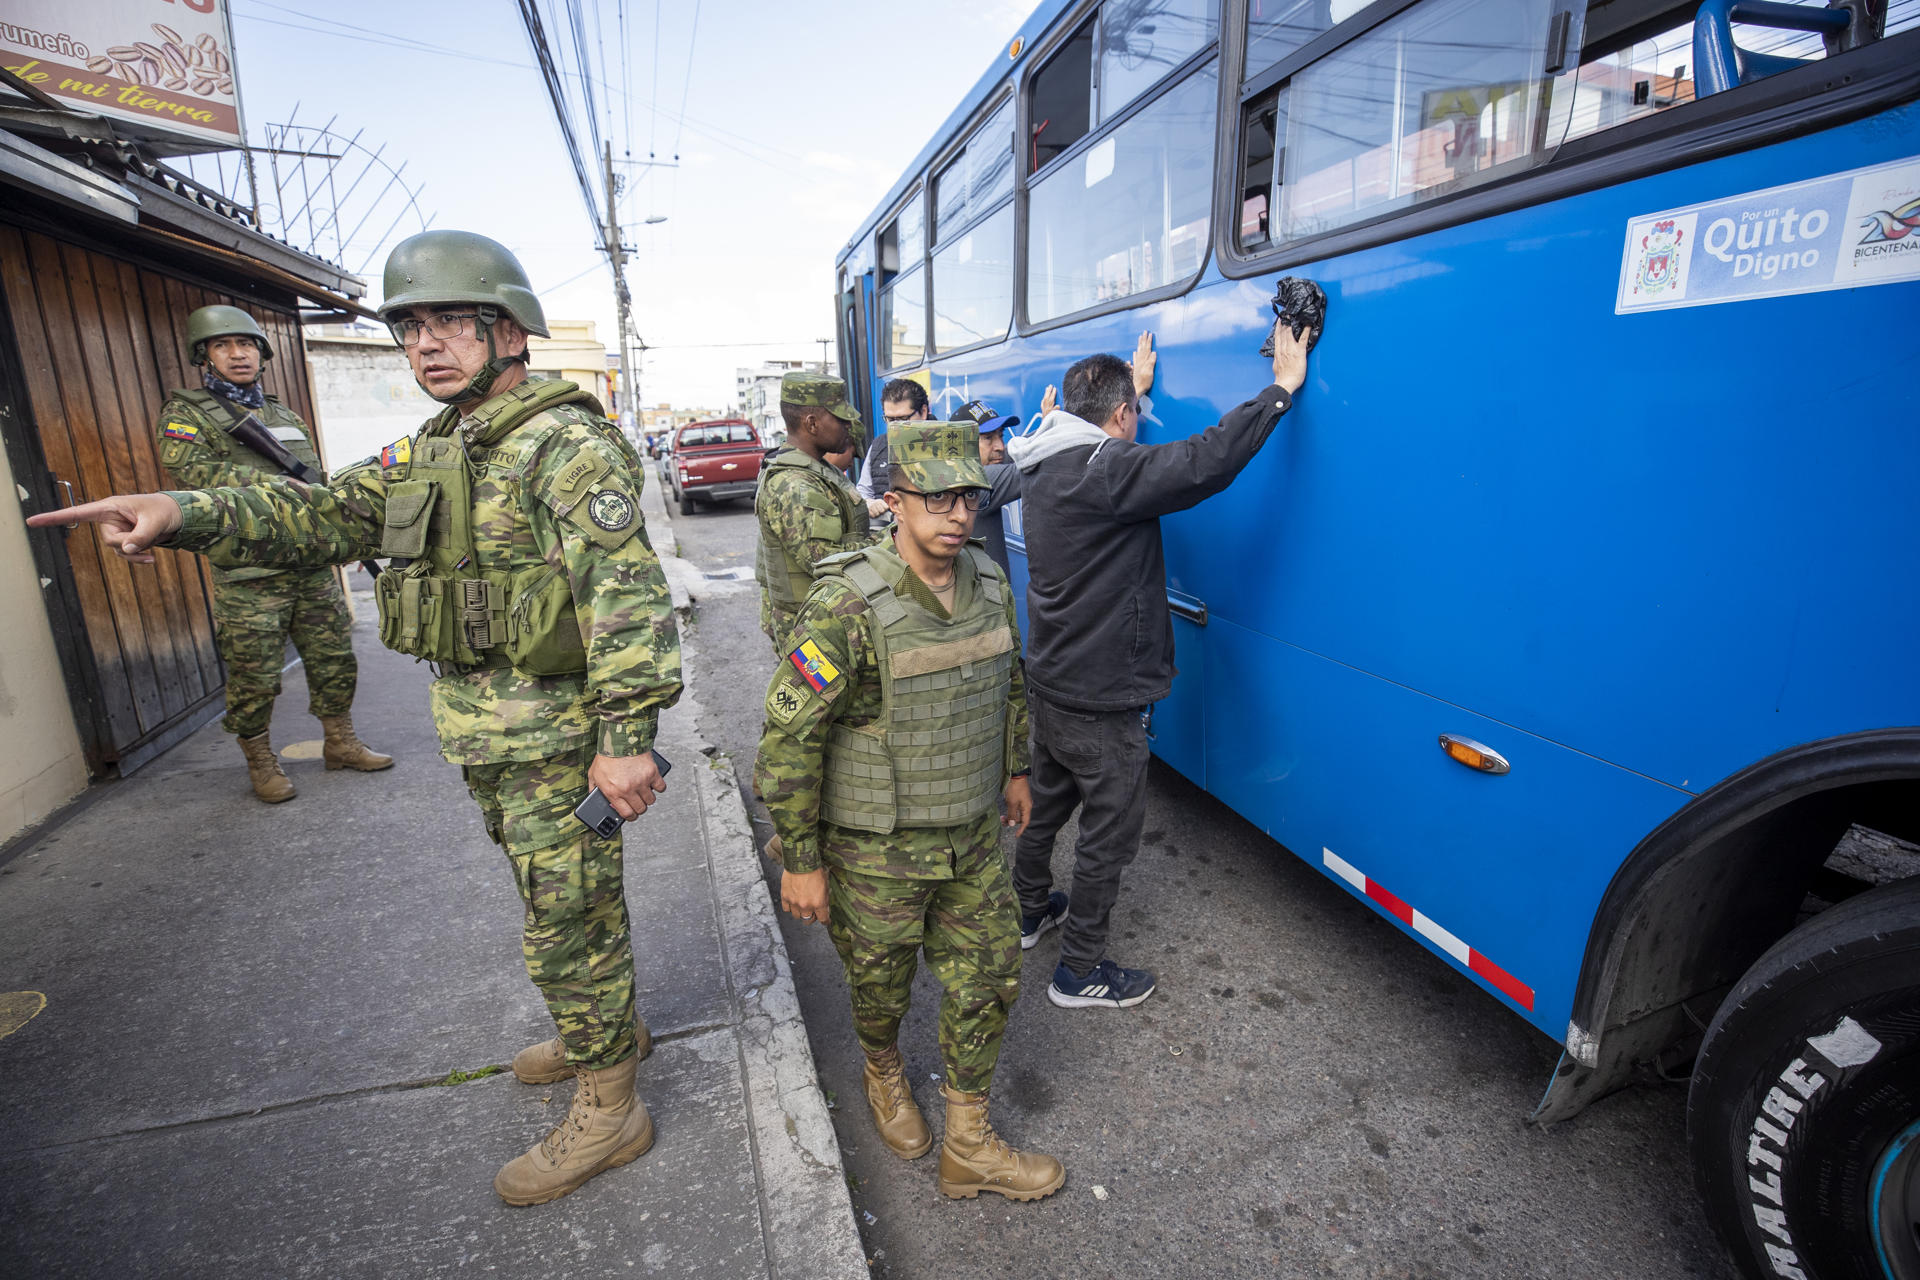 Militares ecuatorianos realizan control de armas y estupefacientes en una de las calles de Quito (Ecuador), en una fotografía de archivo. EFE/José Jácome